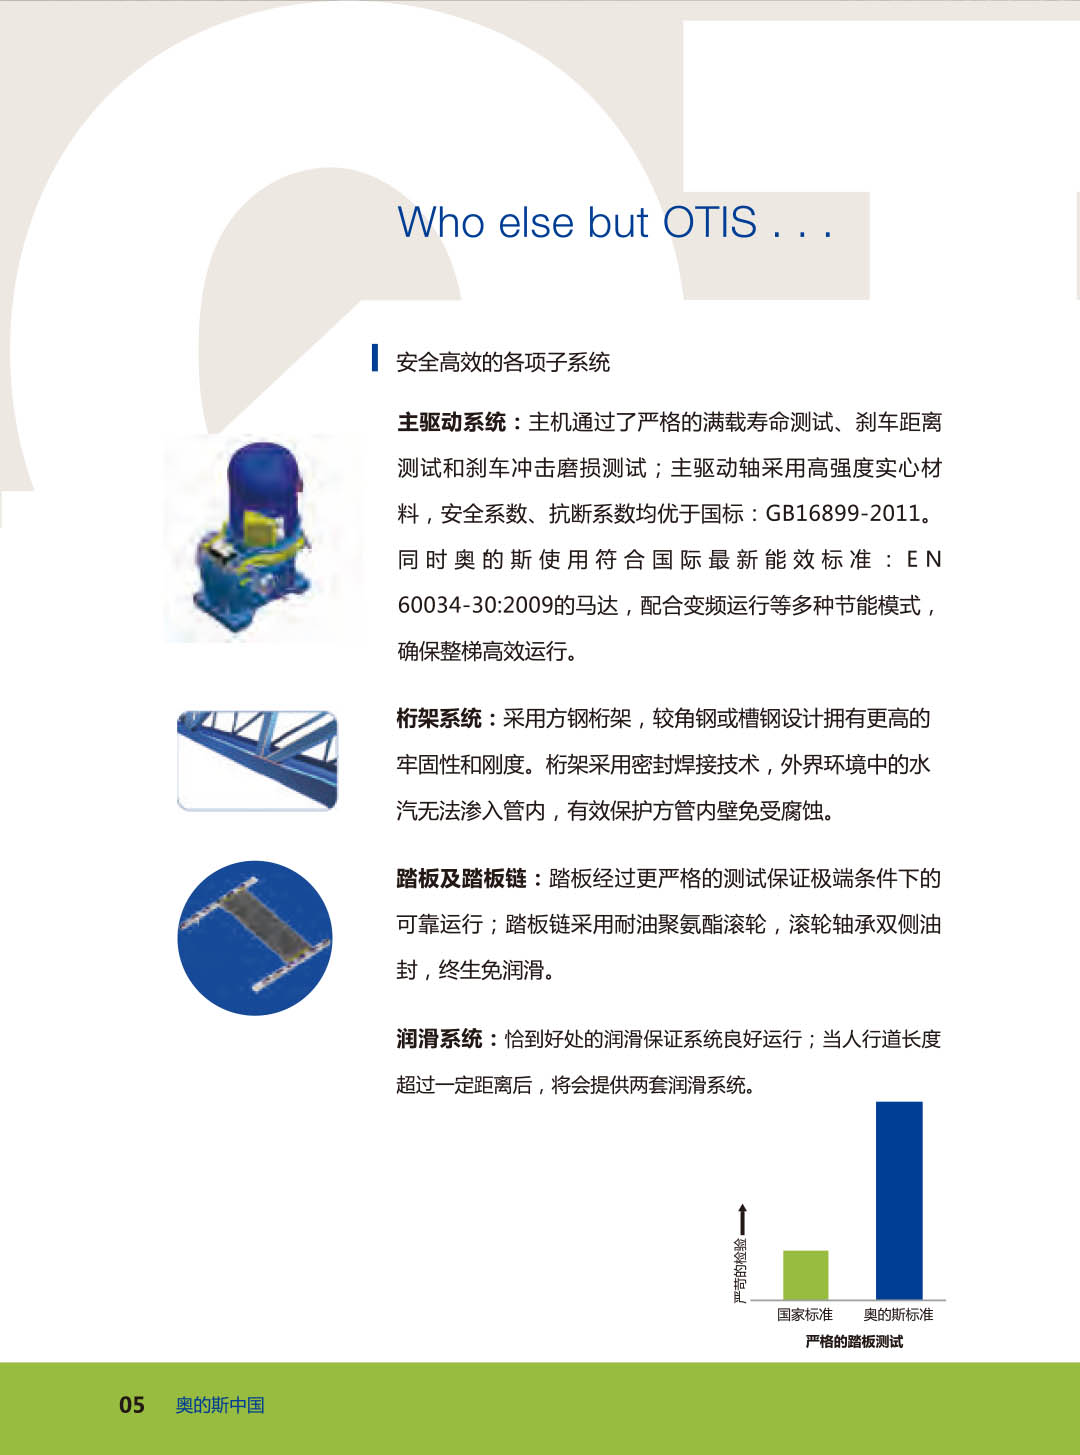 1_0020_19.3 606NCT_OCL China Customers_June 2016.jpg